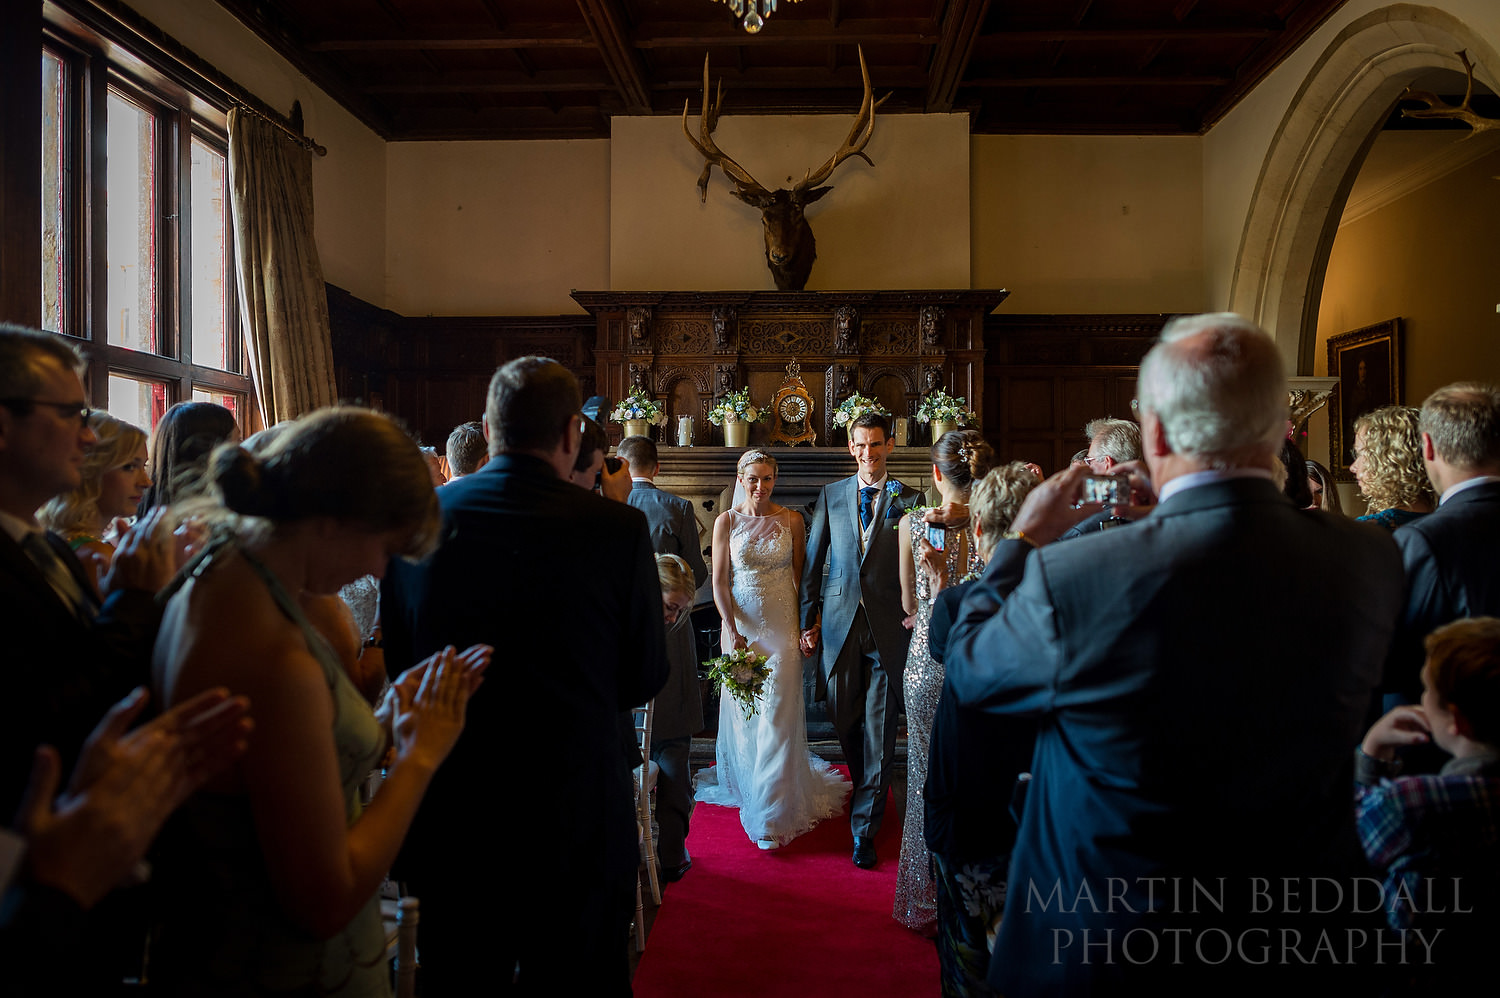 Huntsham Court wedding in the Great Hall